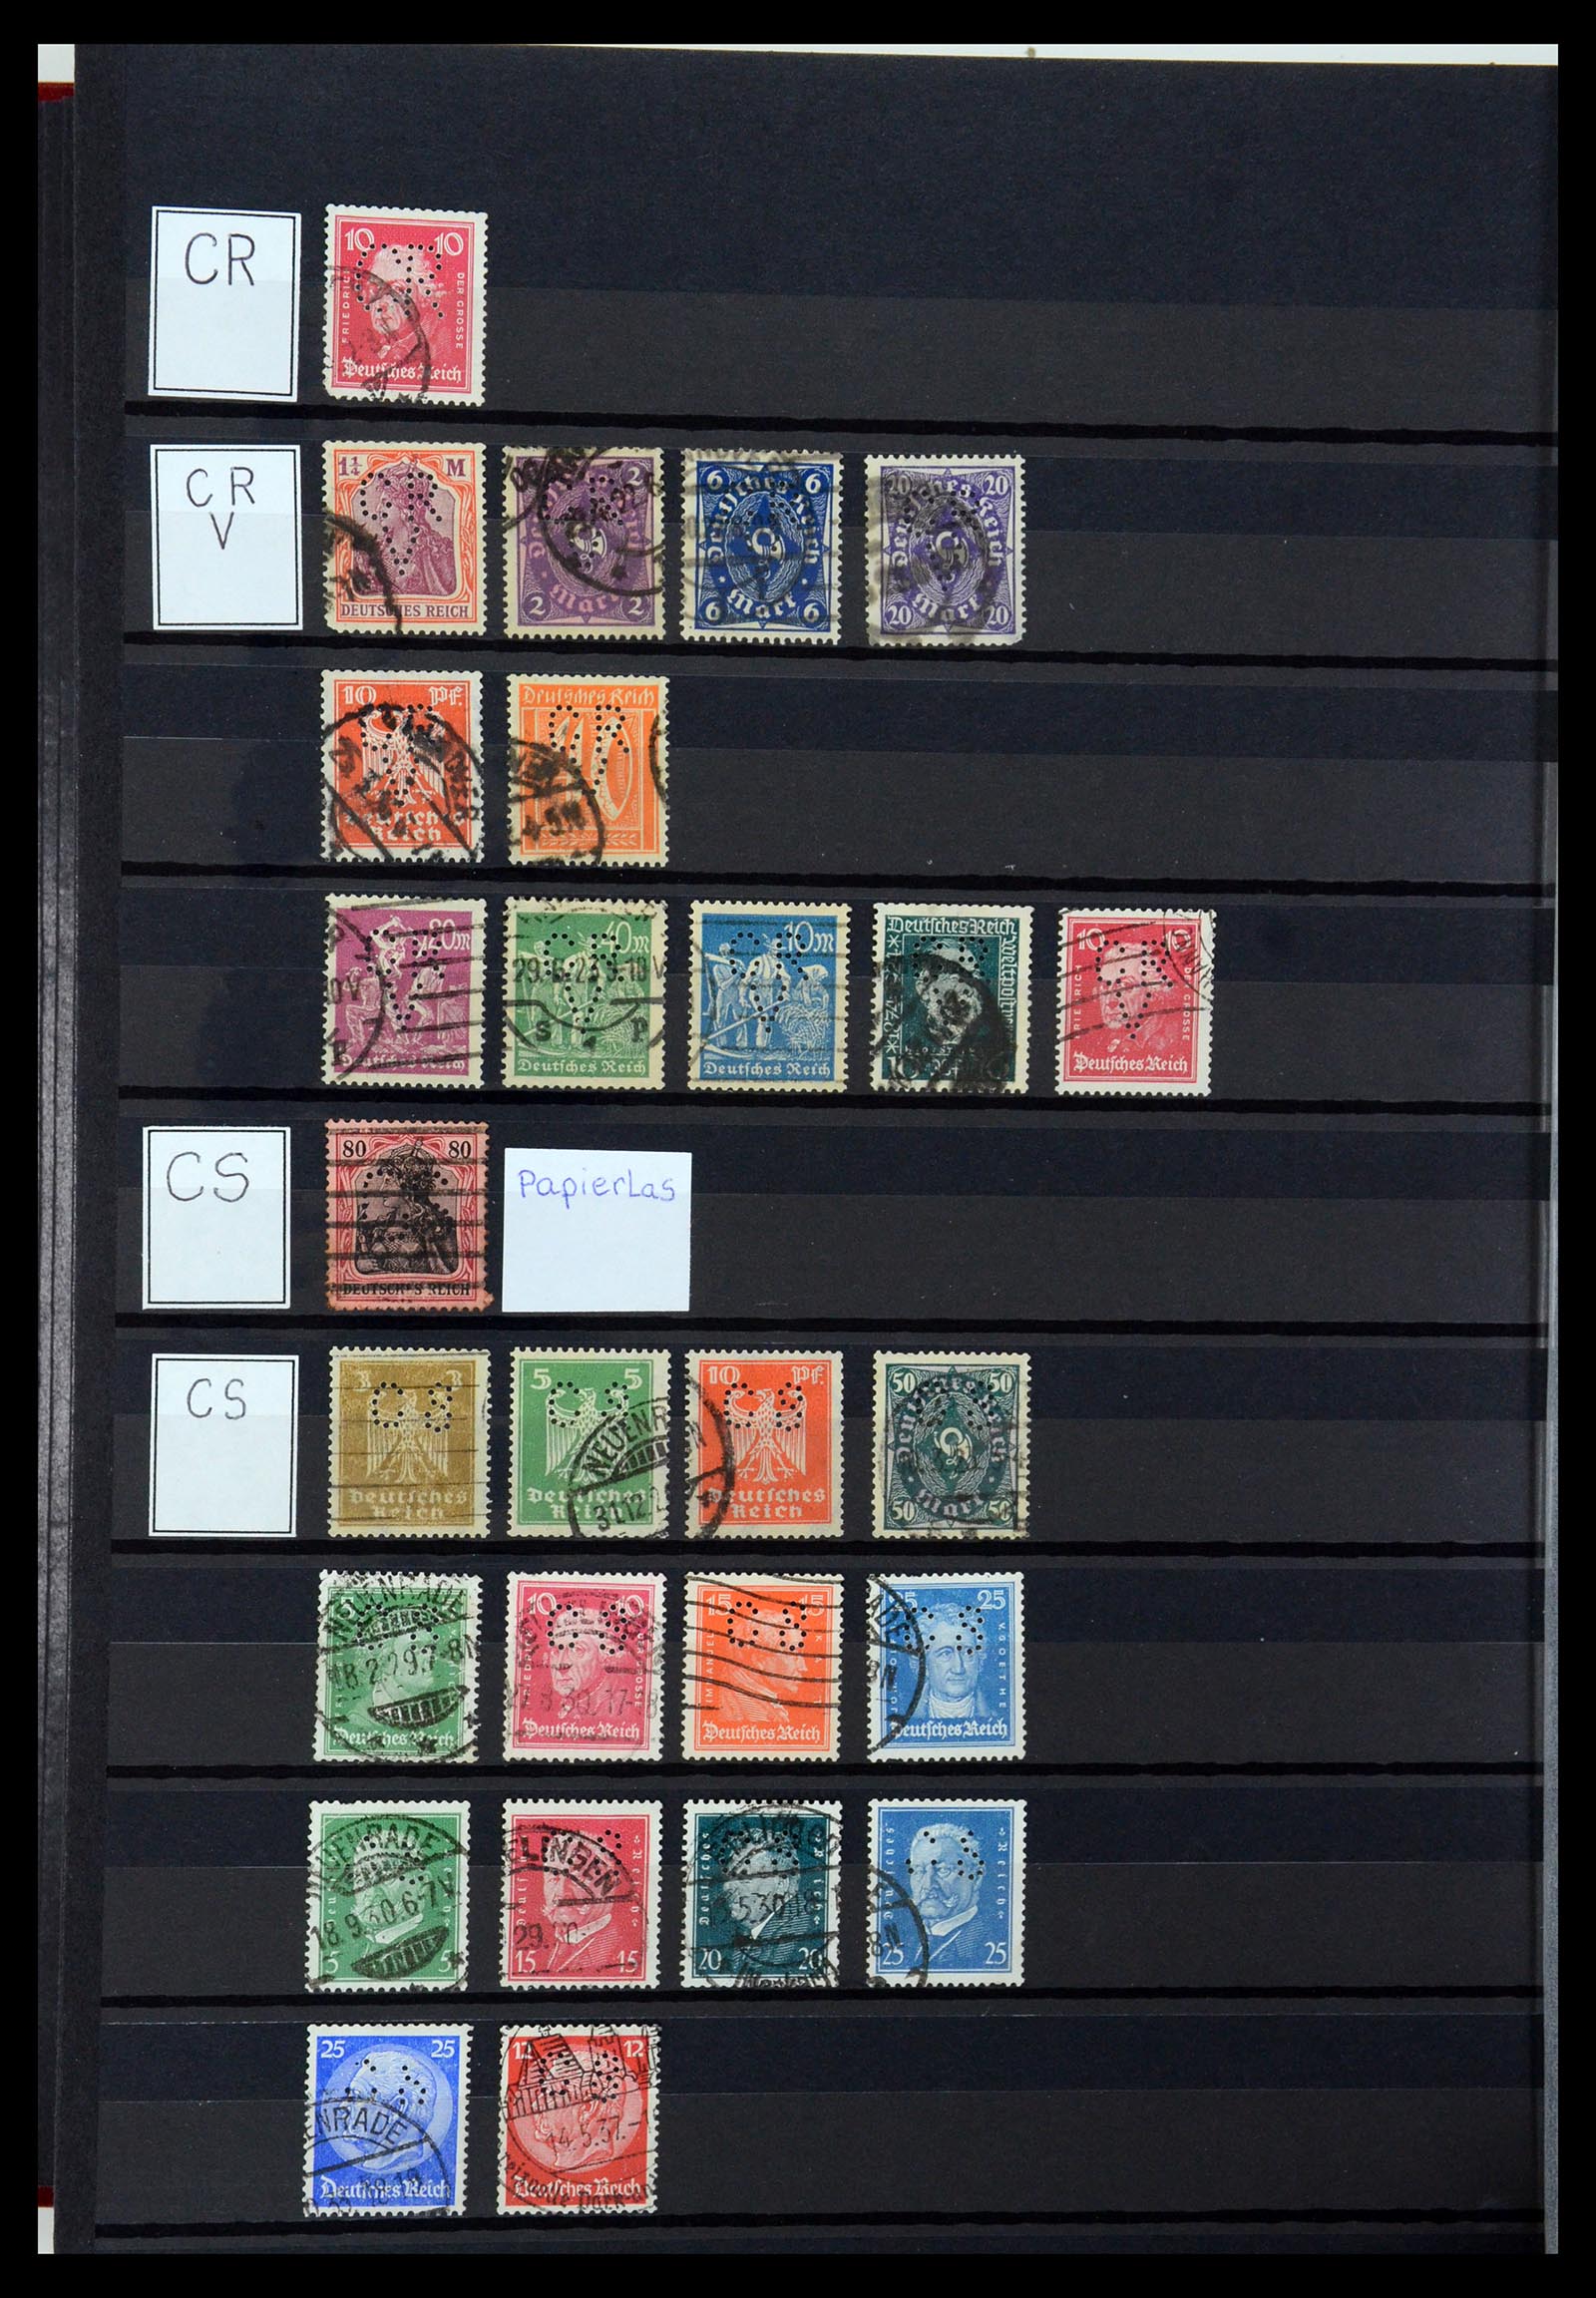 36405 080 - Stamp collection 36405 German Reich perfins 1880-1945.